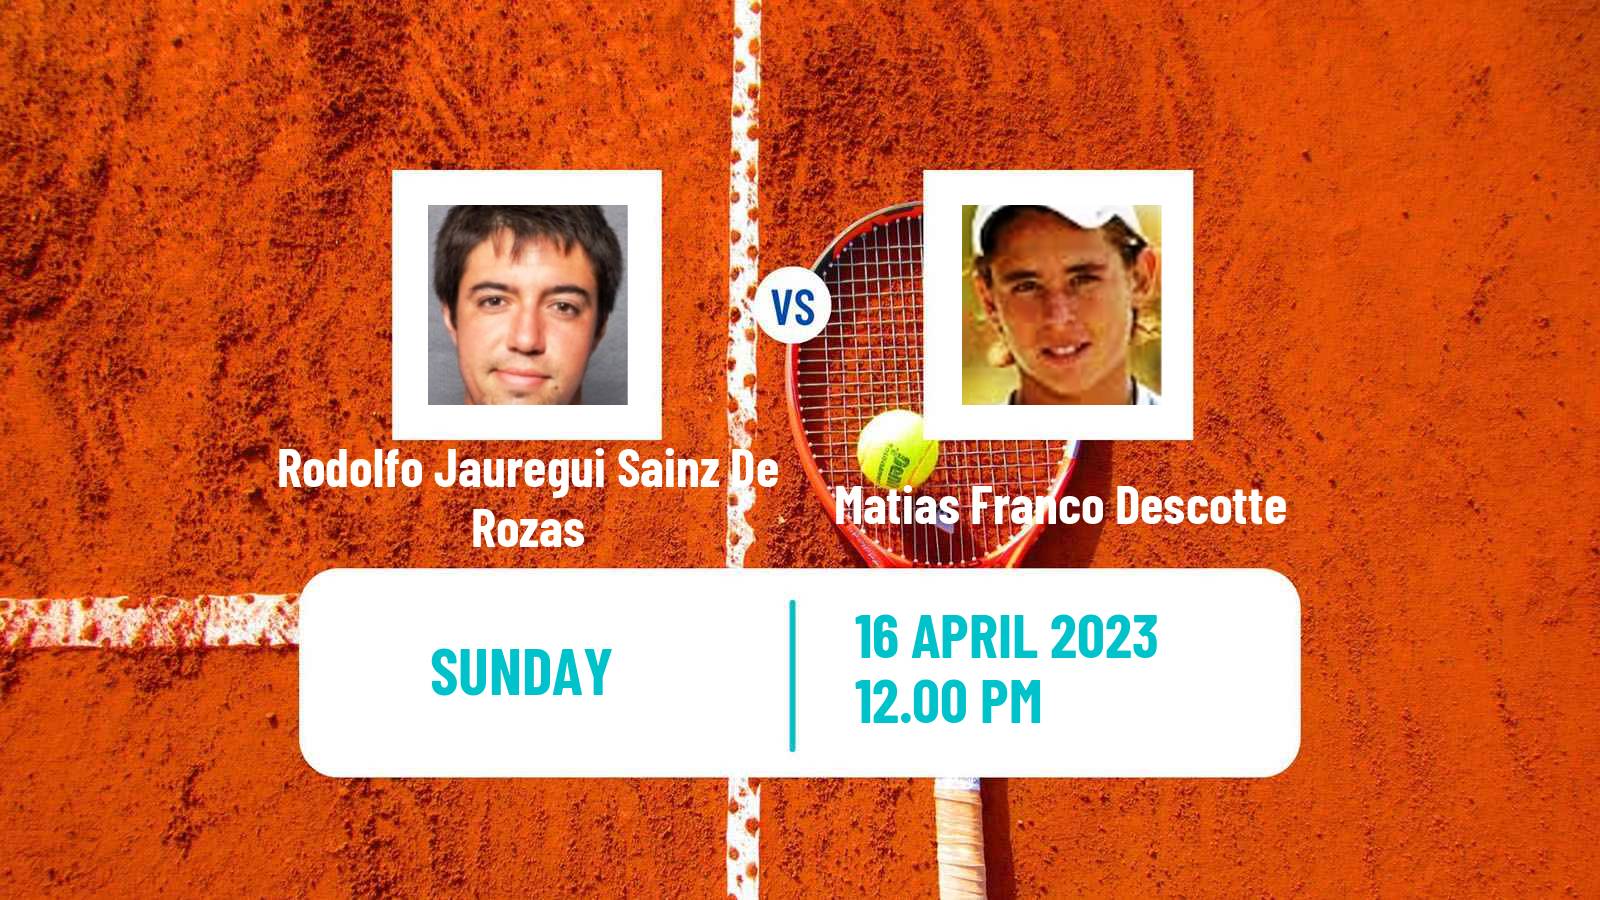 Tennis ATP Challenger Rodolfo Jauregui Sainz De Rozas - Matias Franco Descotte